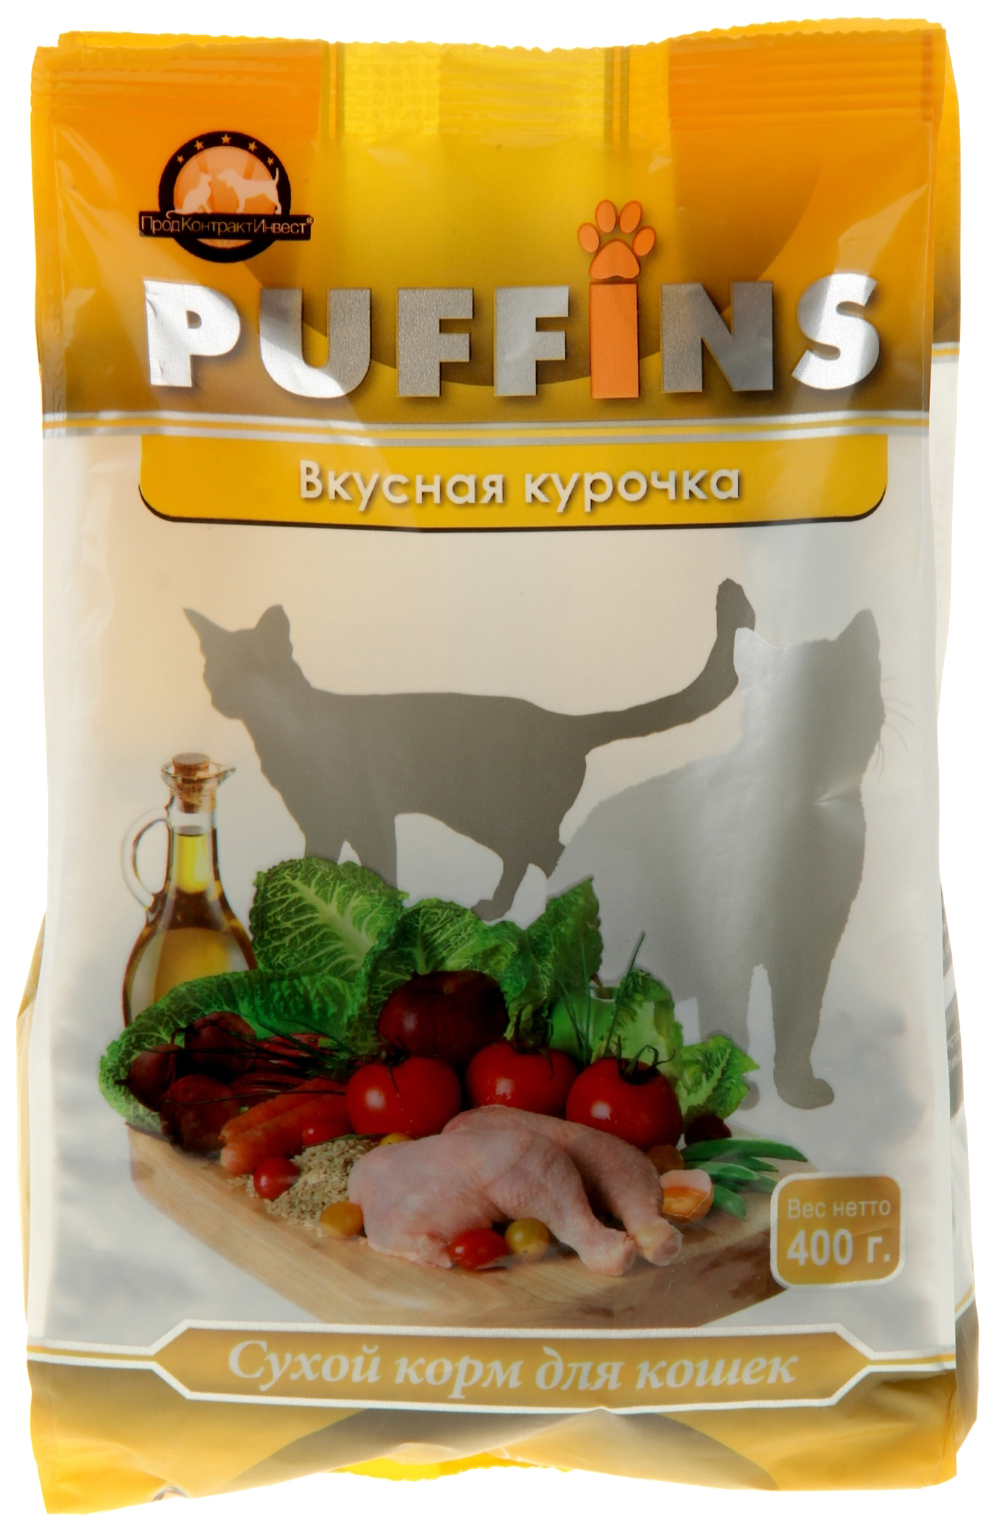 фото Сухой корм для кошек puffins, вкусная курочка, 0,4кг